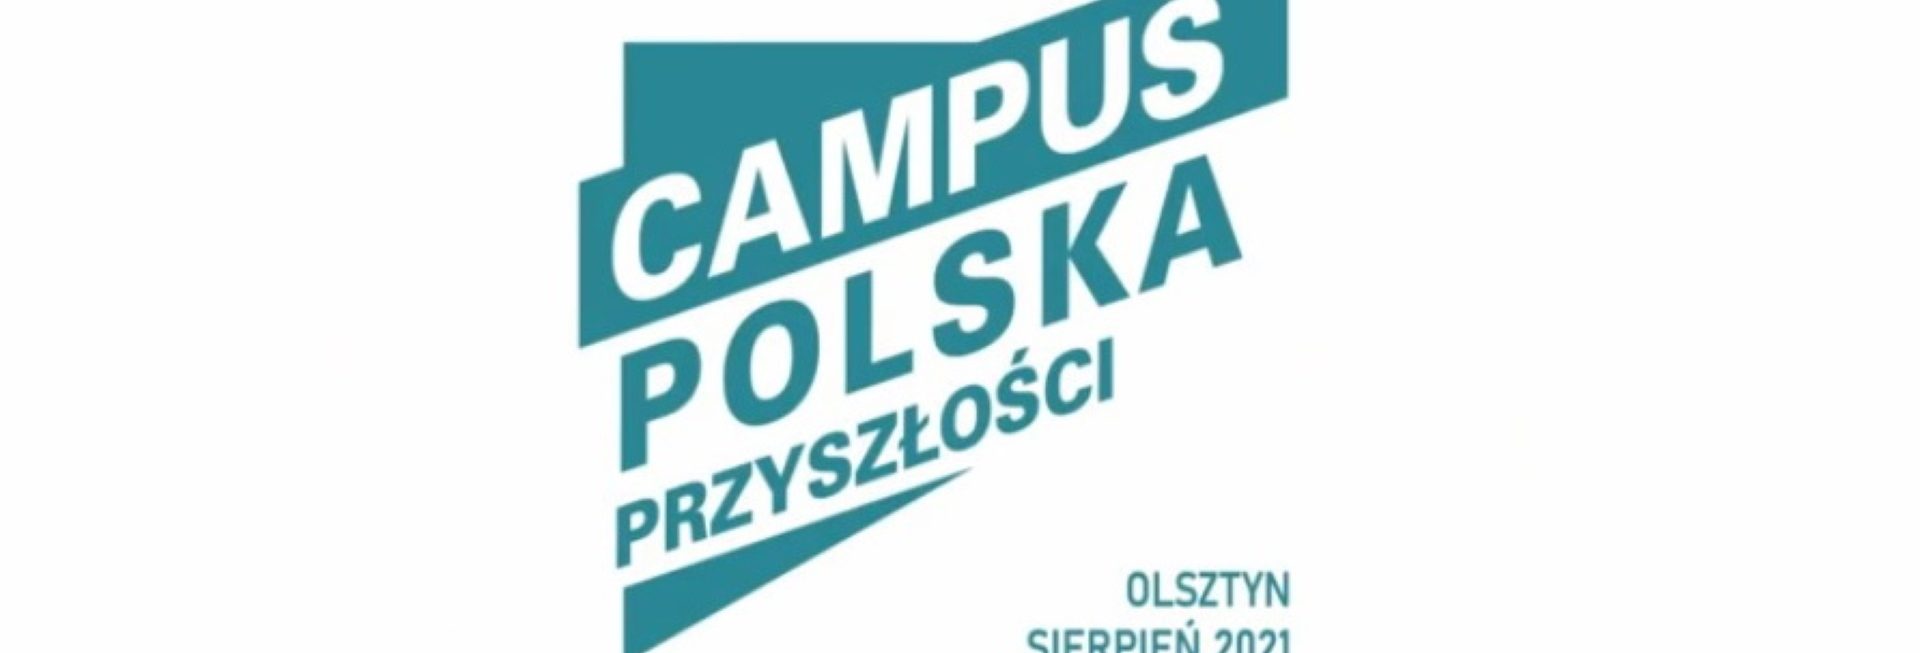 Plakat graficzny zapraszający do Olsztyna - miasteczka studenckiego w Kortowie na pierwsze takie wydarzenie w Polsce - Campus Polska Przyszłości - Olsztyn 2021. Na plakacie napisy.  